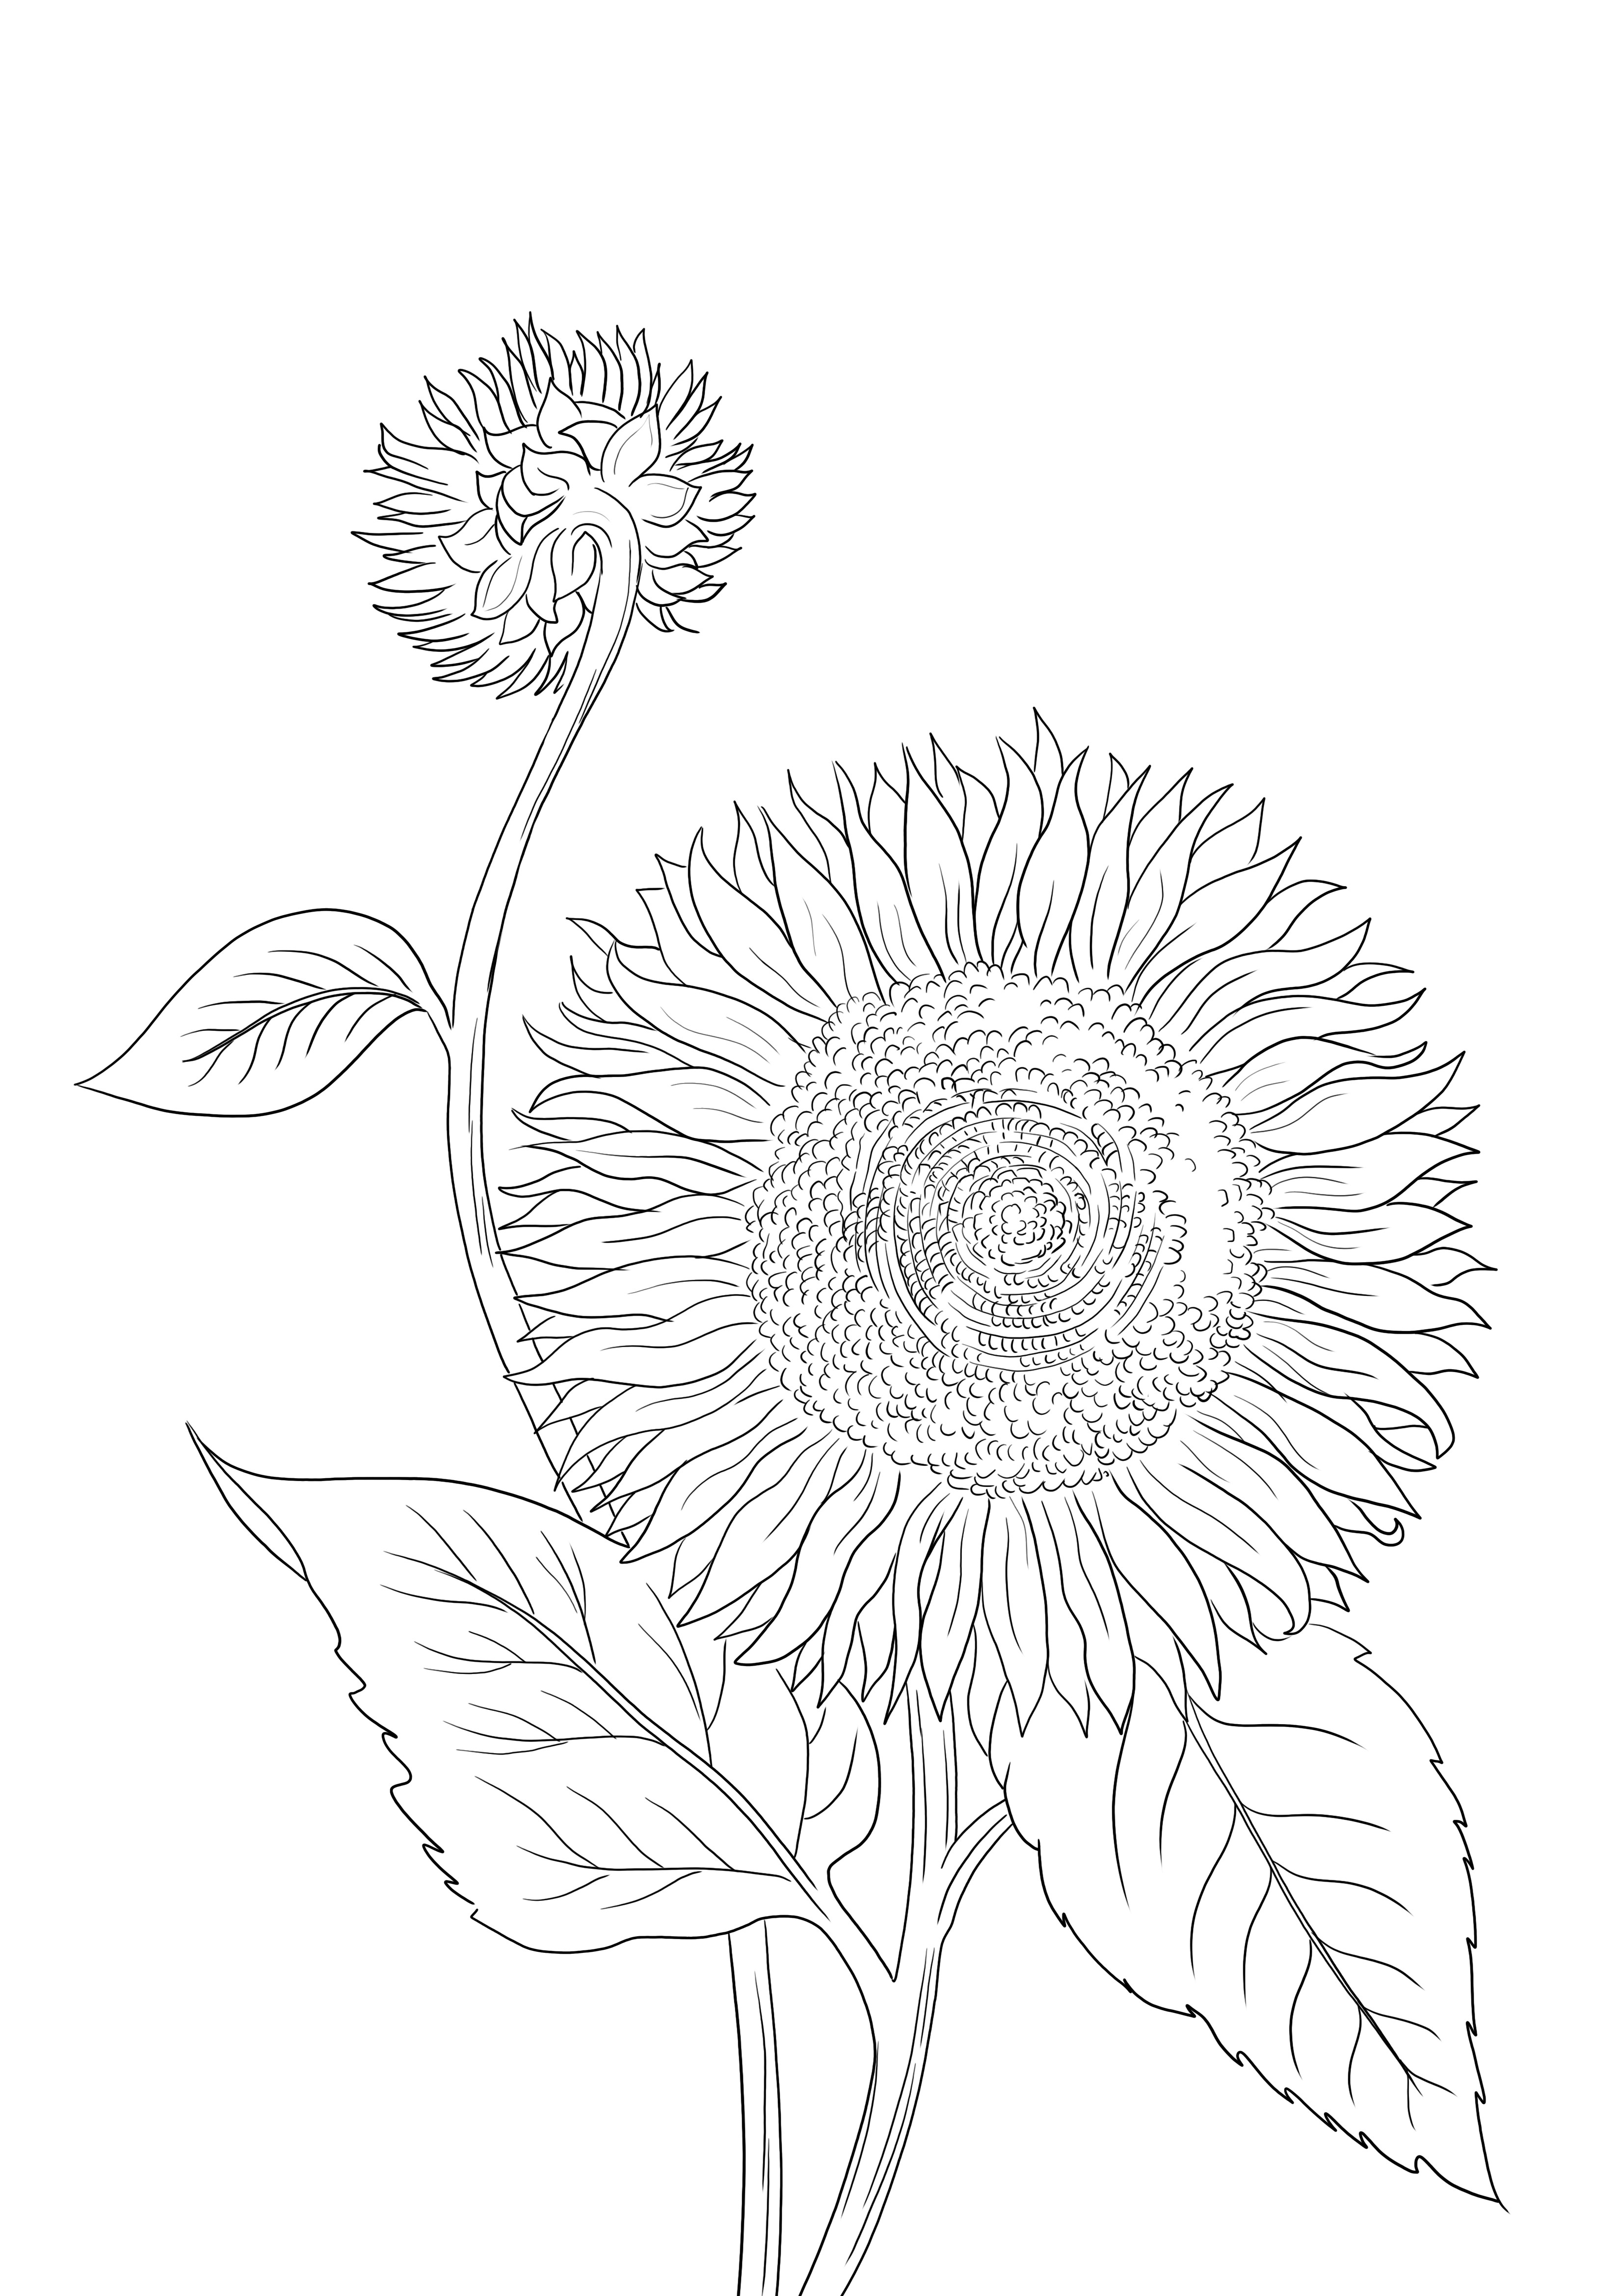 Floarea-soarelui înflorit este gata pentru a fi tipărită sau descărcată și colorată